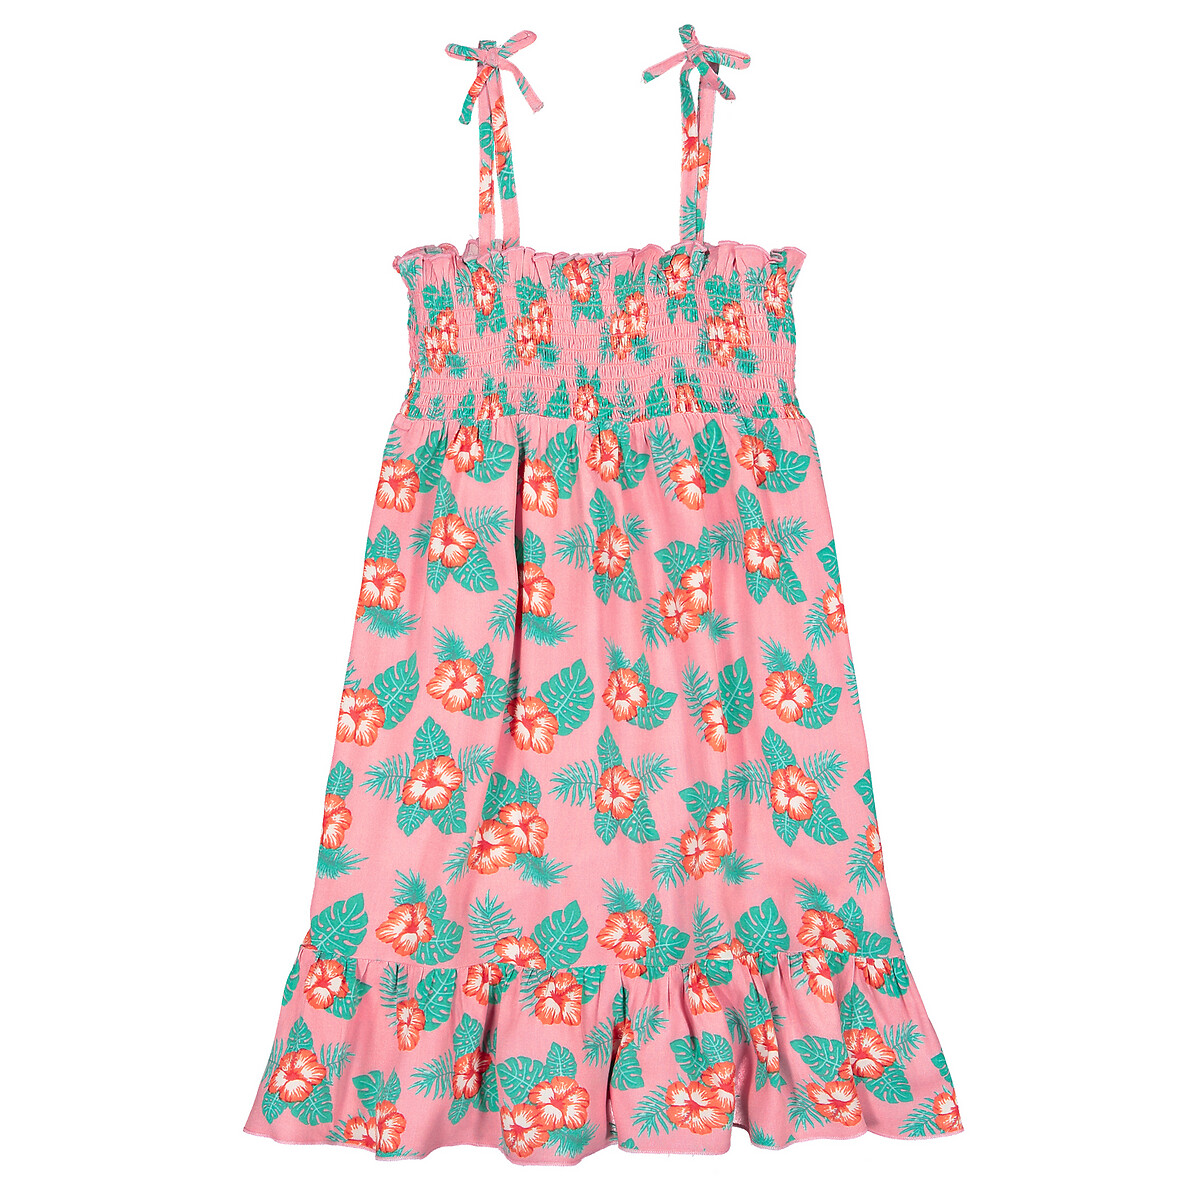 Платье LaRedoute На бретелях с принтом гавайи 3-12 лет 3 года - 94 см розовый, размер 3 года - 94 см - фото 3